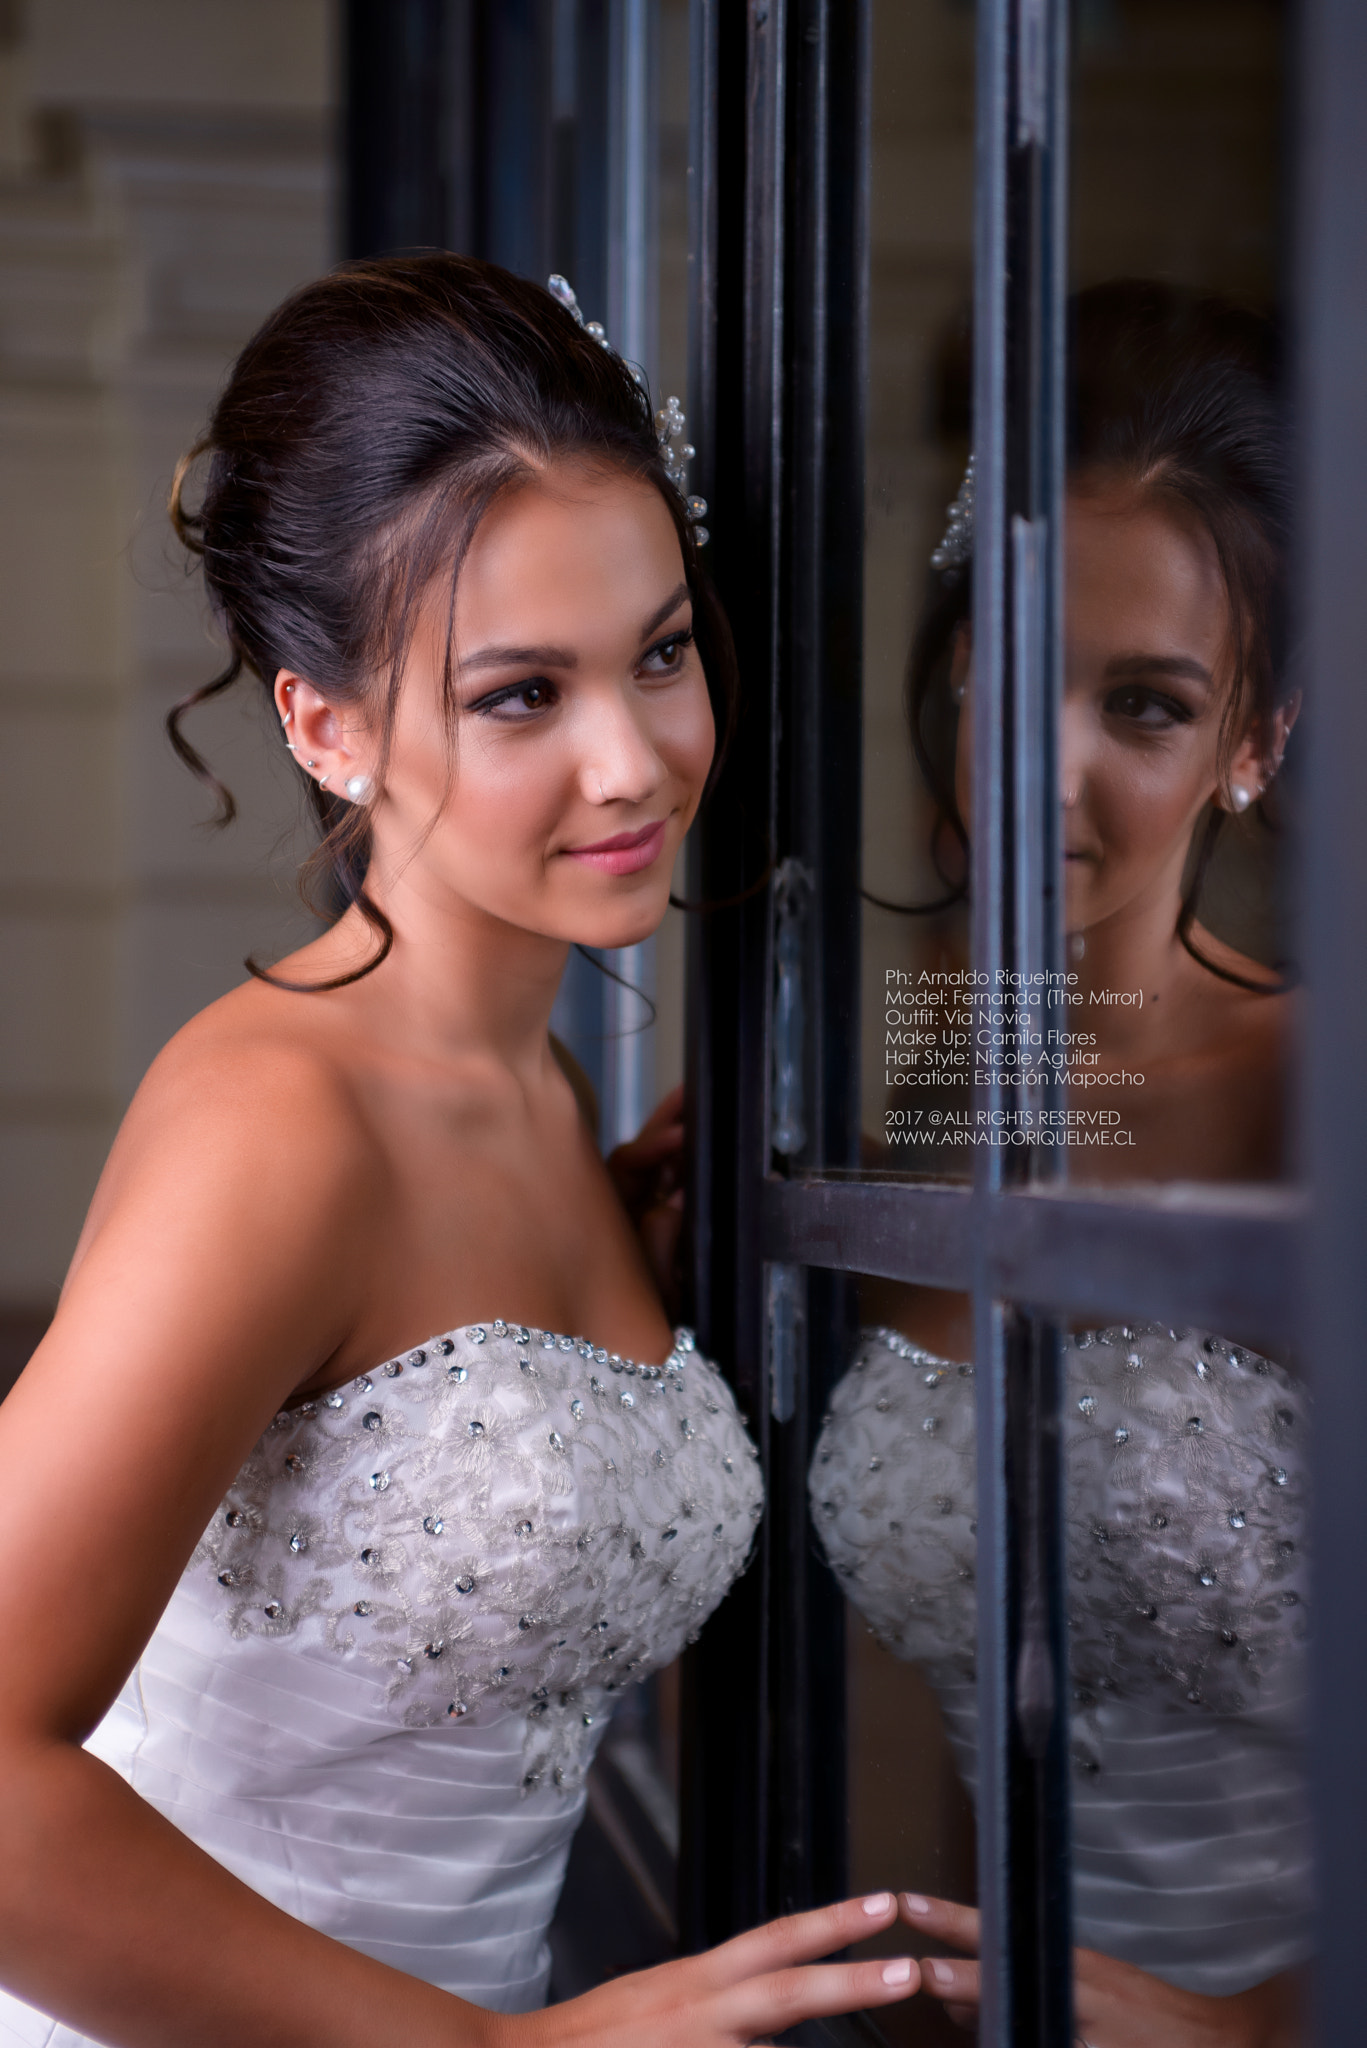 Nikon D800 + AF Zoom-Nikkor 35-70mm f/2.8D sample photo. Fernanda 3 - brides - fashionshoots photography